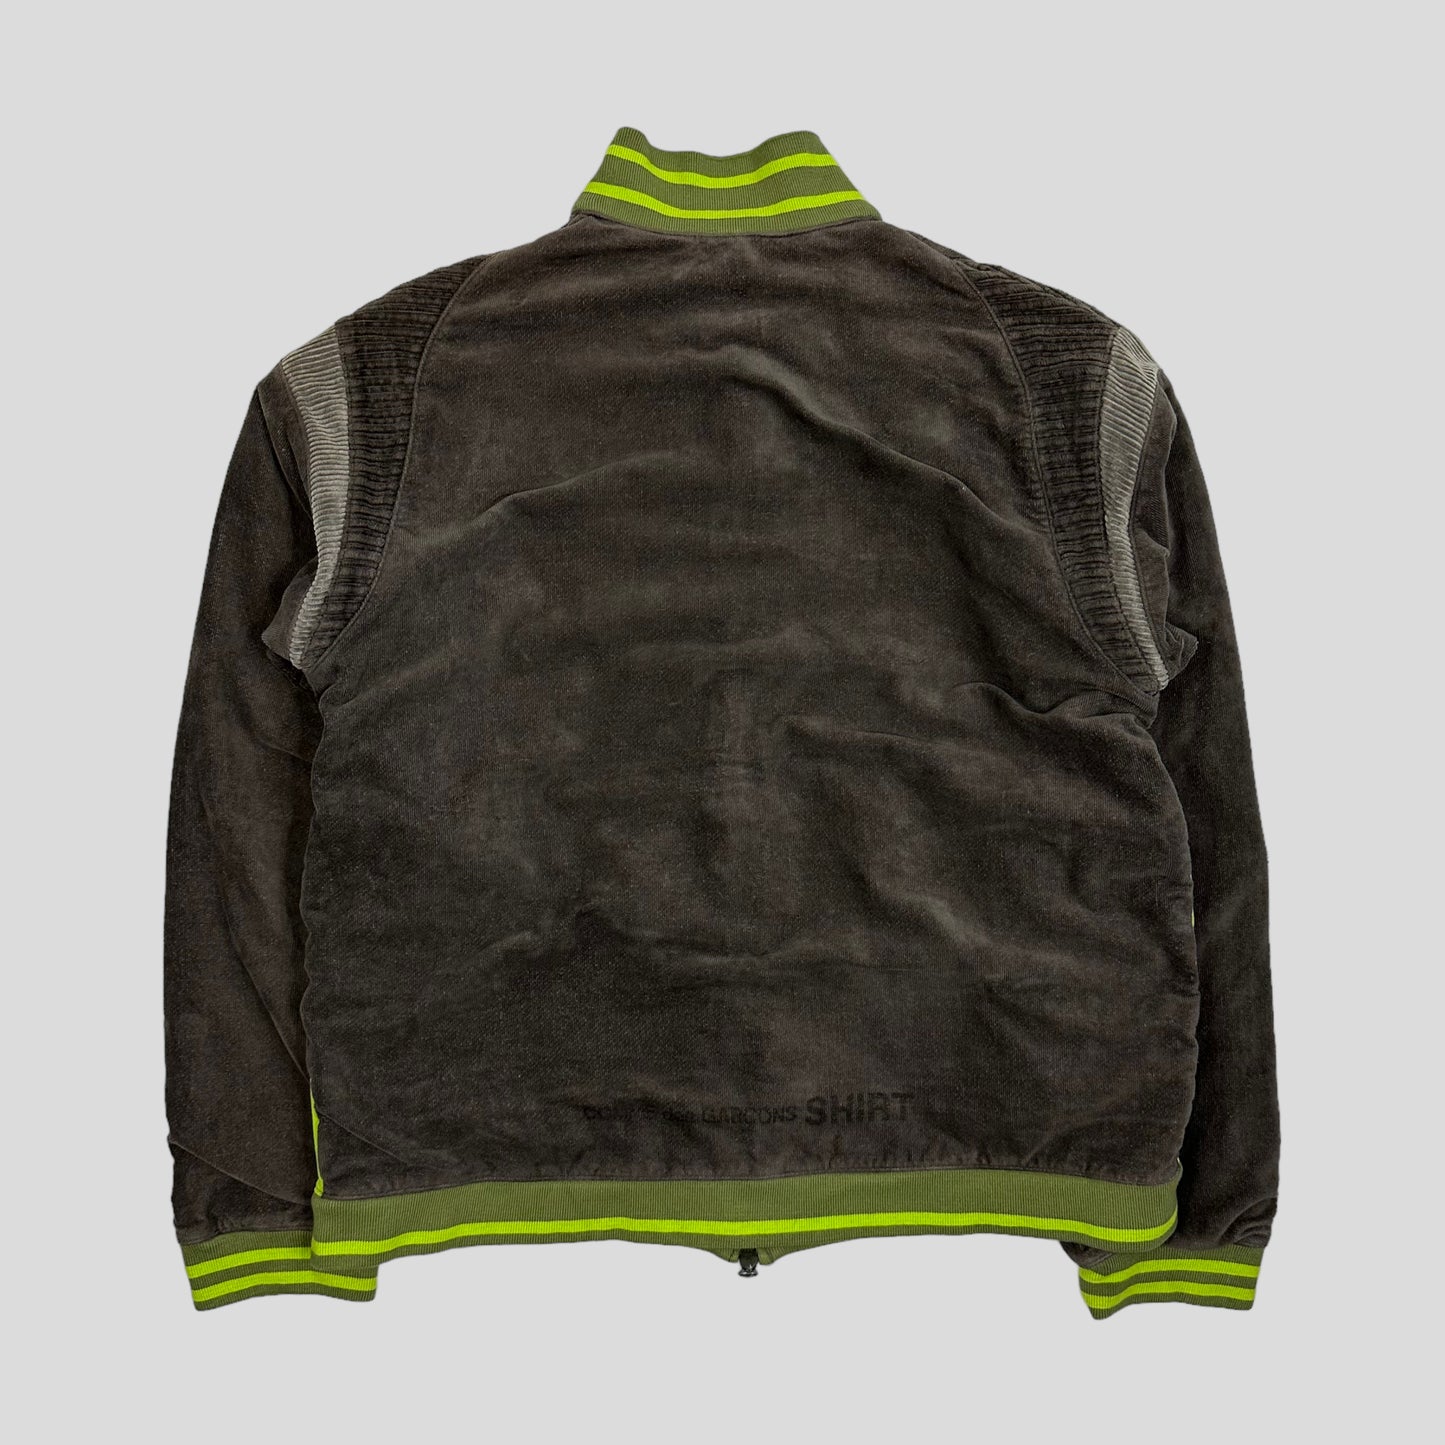 CDG Shirt 00’s Neon Mesh & Corduroy Panelled Logo Jacket - S/M